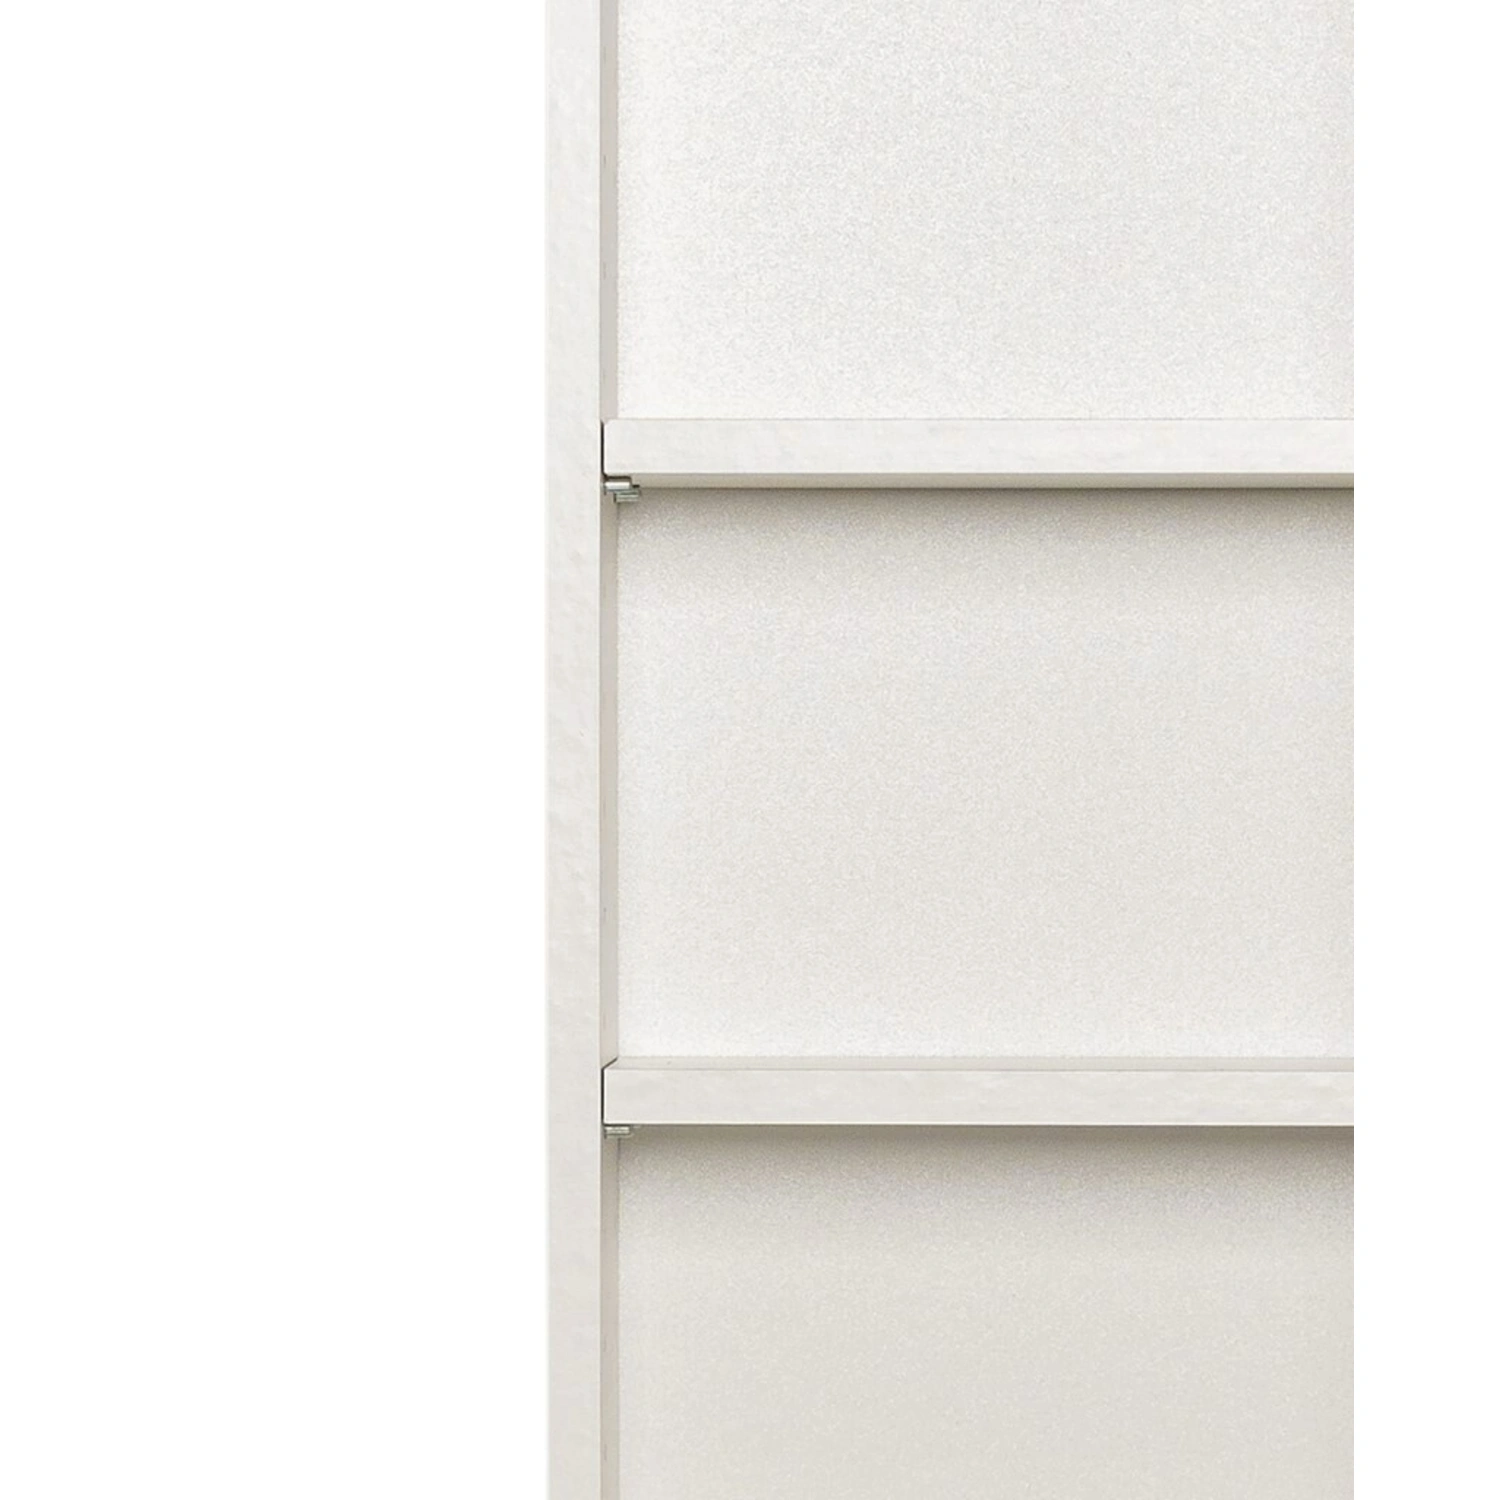 HELD MÖBEL Seitenschrank »Porta«, BxHxT: 60 x 185 x 35 cm